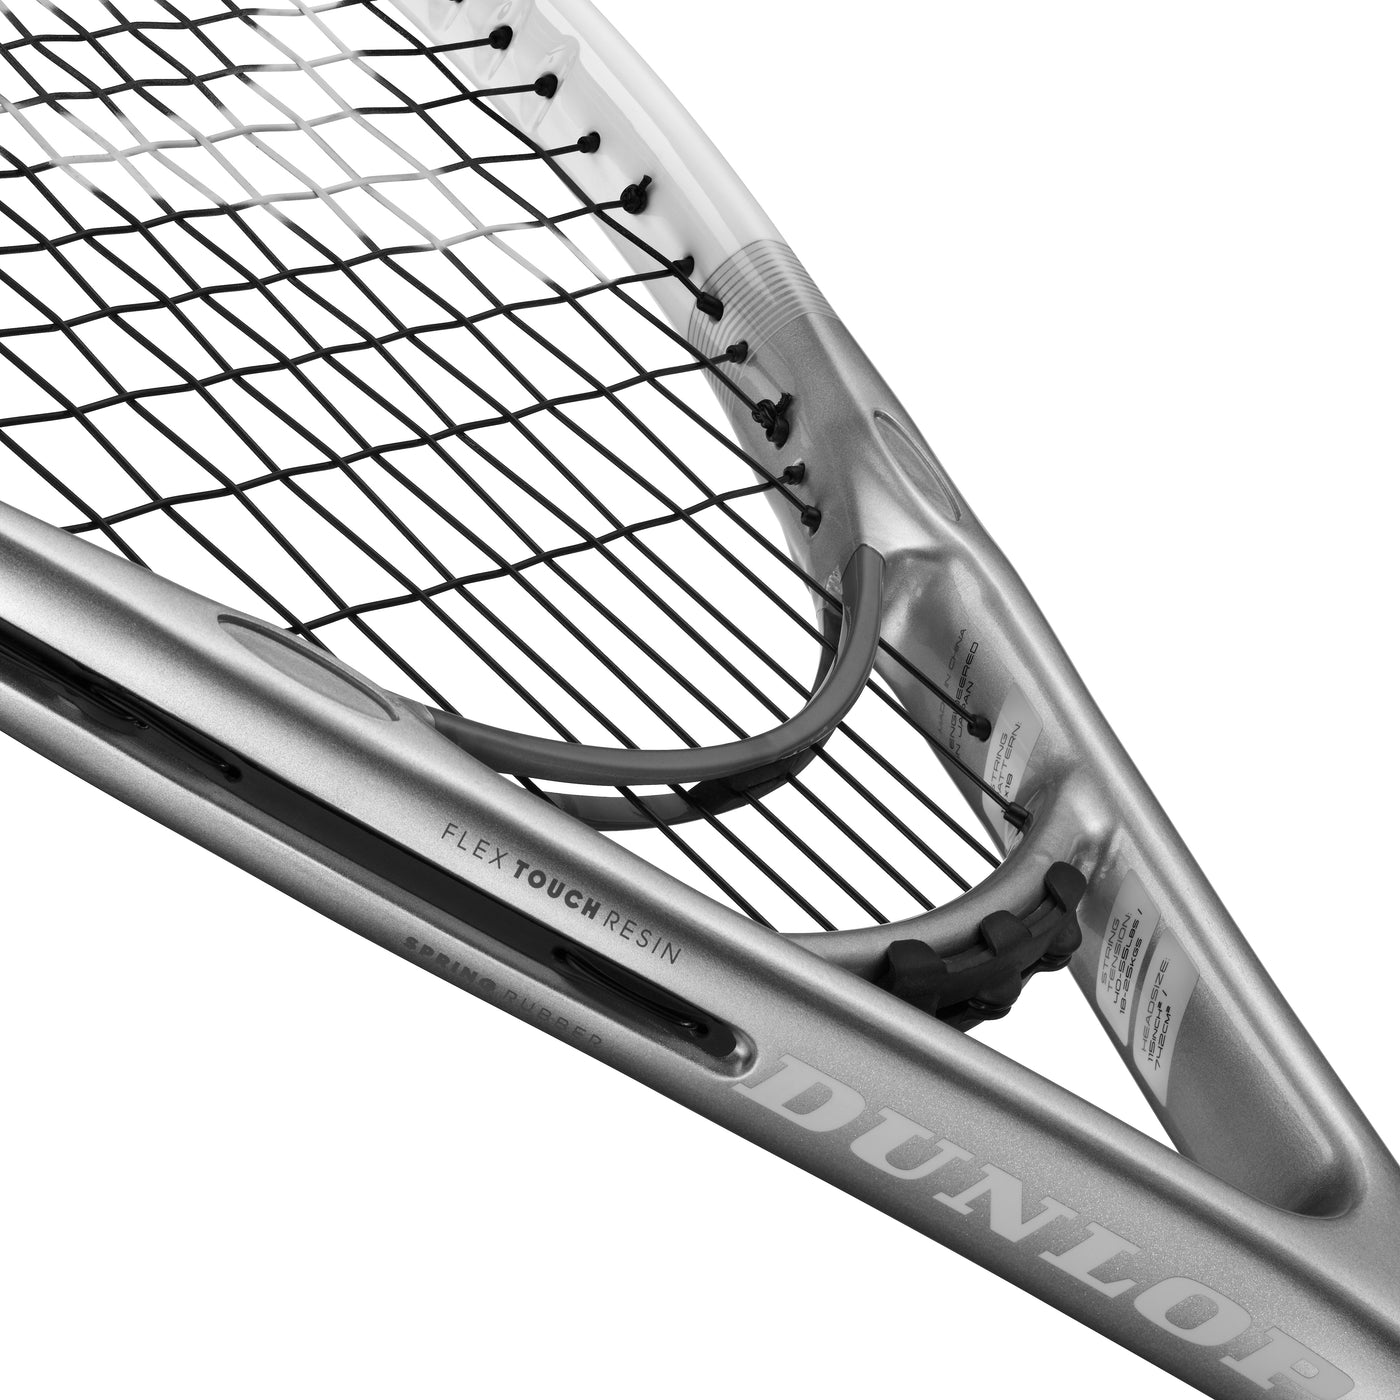 Dunlop LX1000 Lite Tennis Racquet